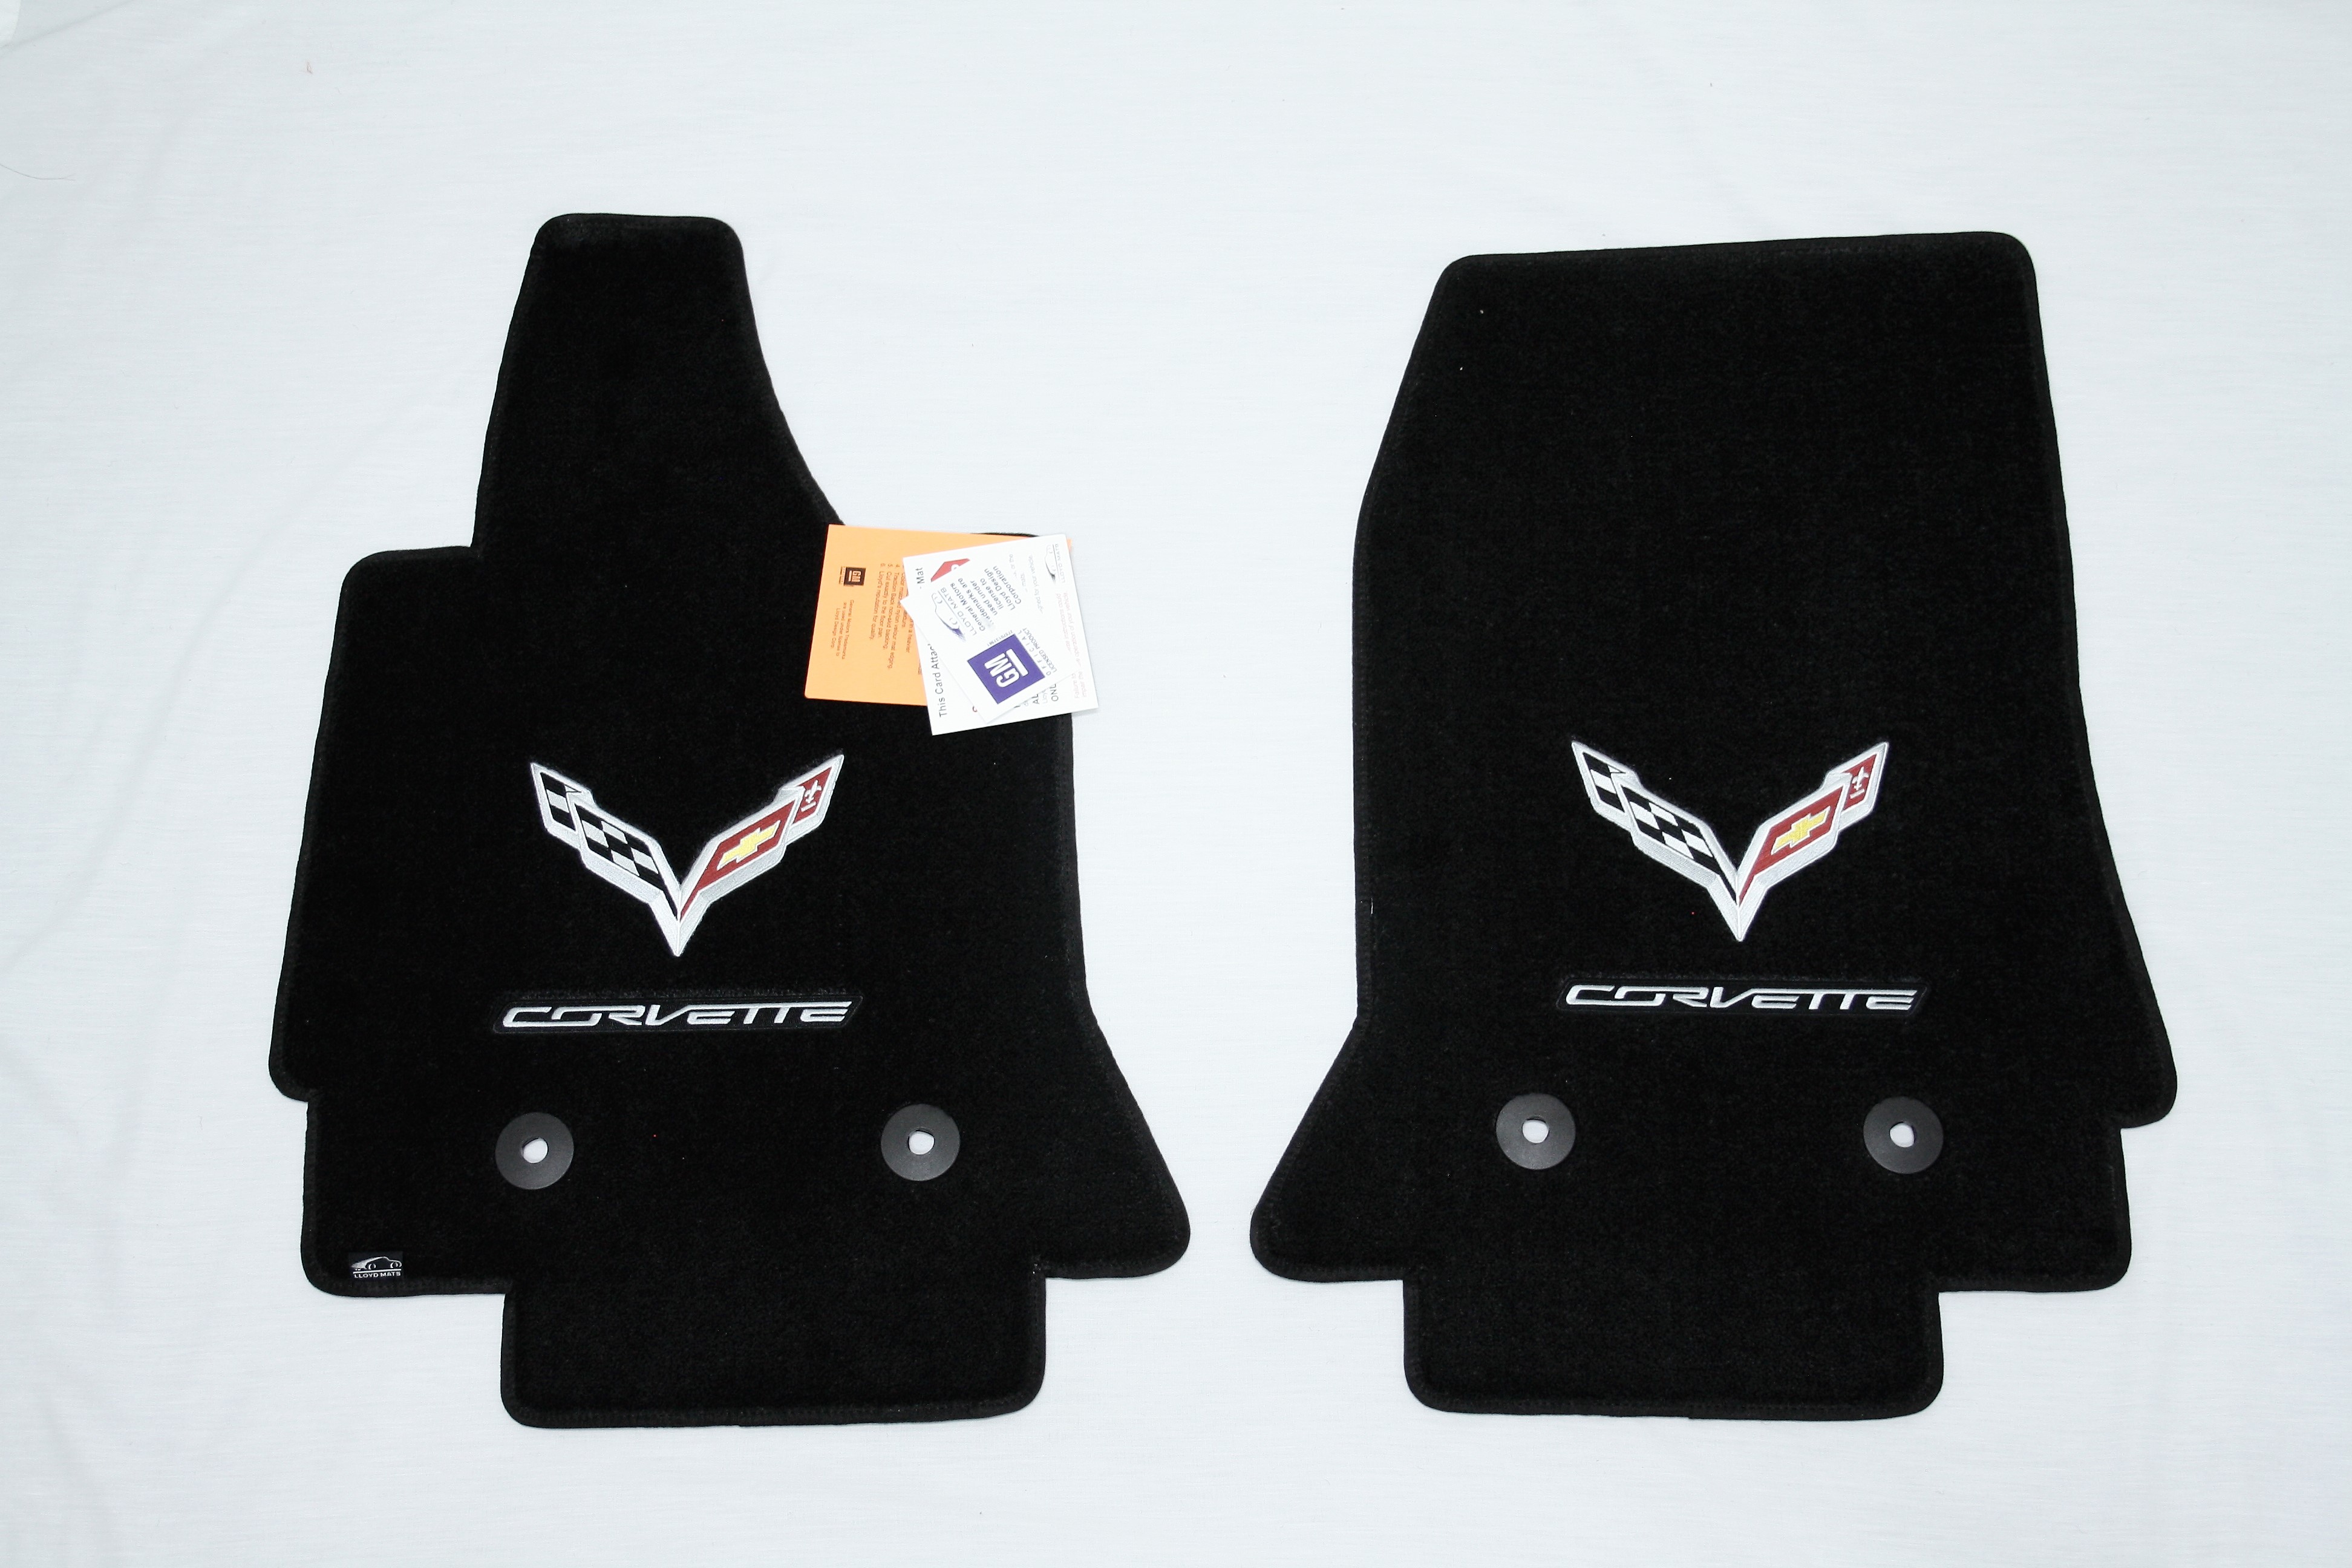 2014-2017 Corvette Lloyd Ulti-vet C7 Jet Floor Mats Pair with C7 Embroidered GM Logo Flag and Corvette Script Silver /